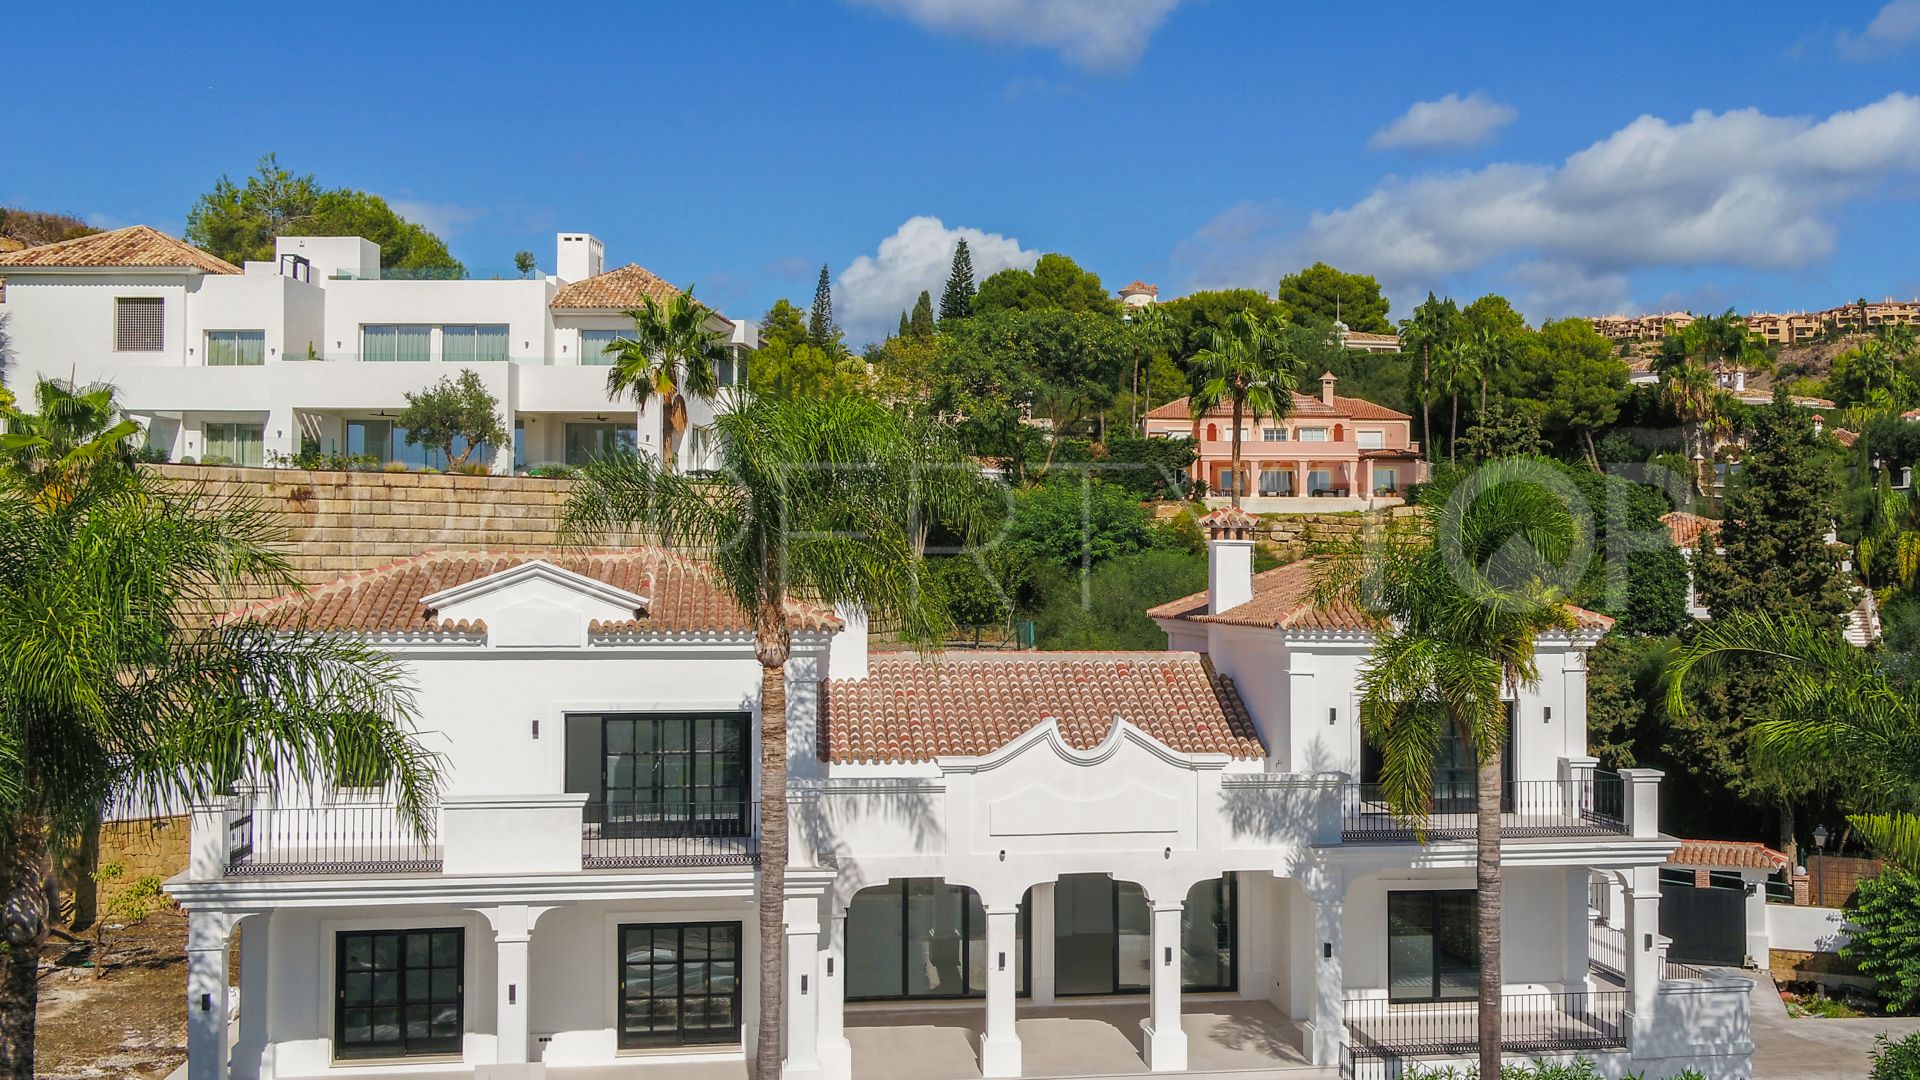 For sale villa in Altos del Paraiso with 6 bedrooms